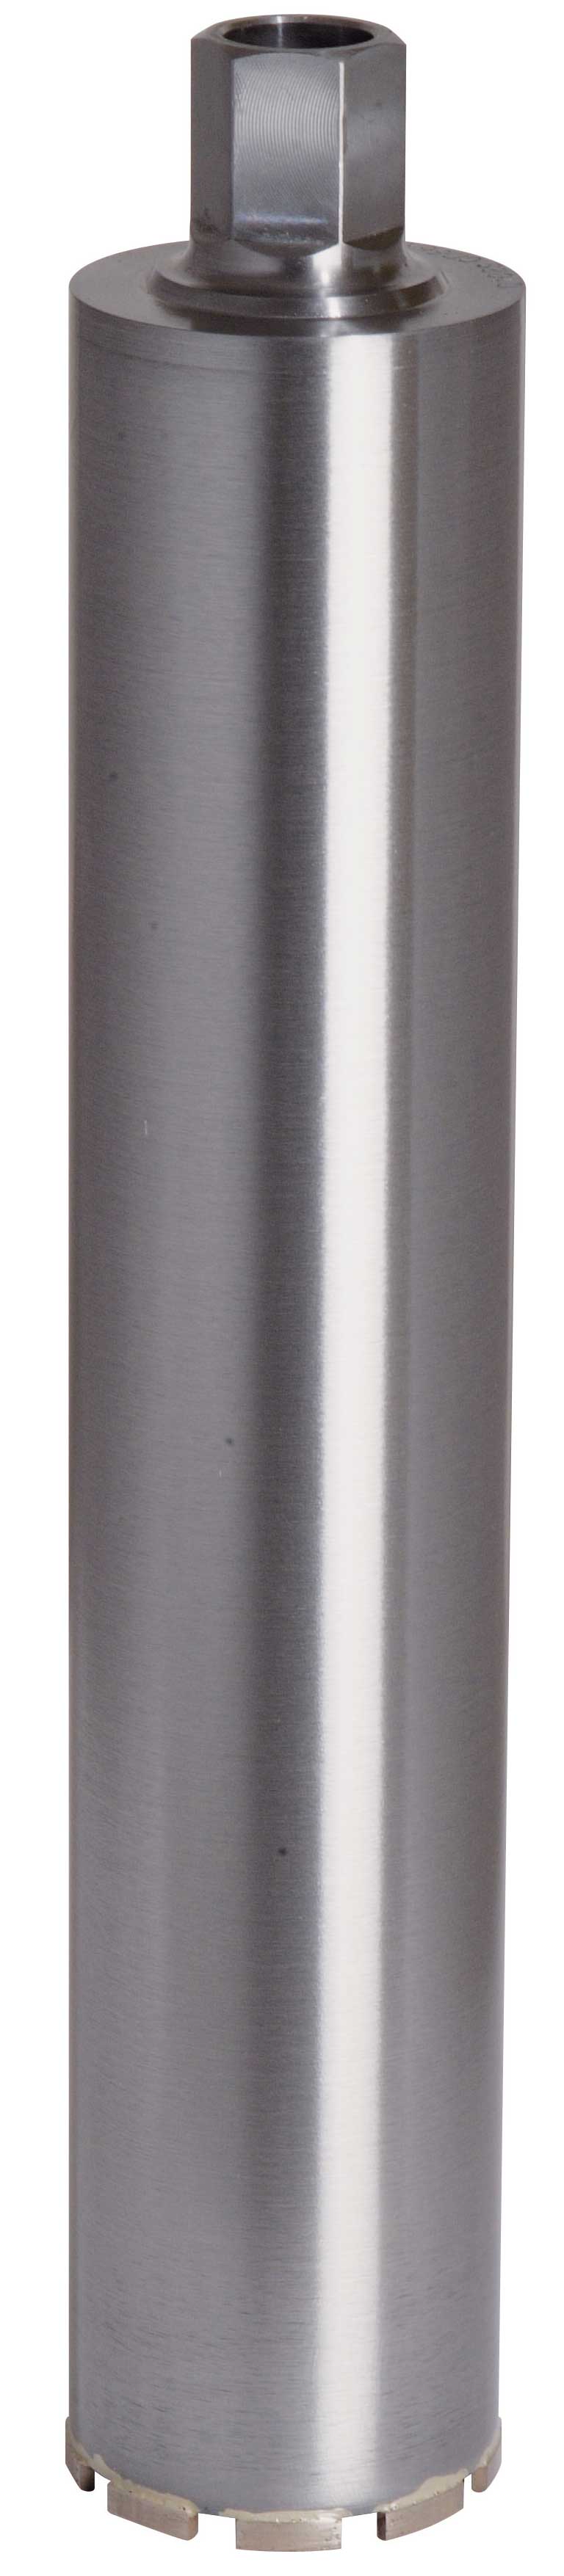 Ø 42 mm Dr Diamond Diamantbohrkrone & Kernbohrer Beton mit 1 1/4 Zoll Aufnahme und 300 mm Nutzlänge zum Nass- & Trockenbohren |